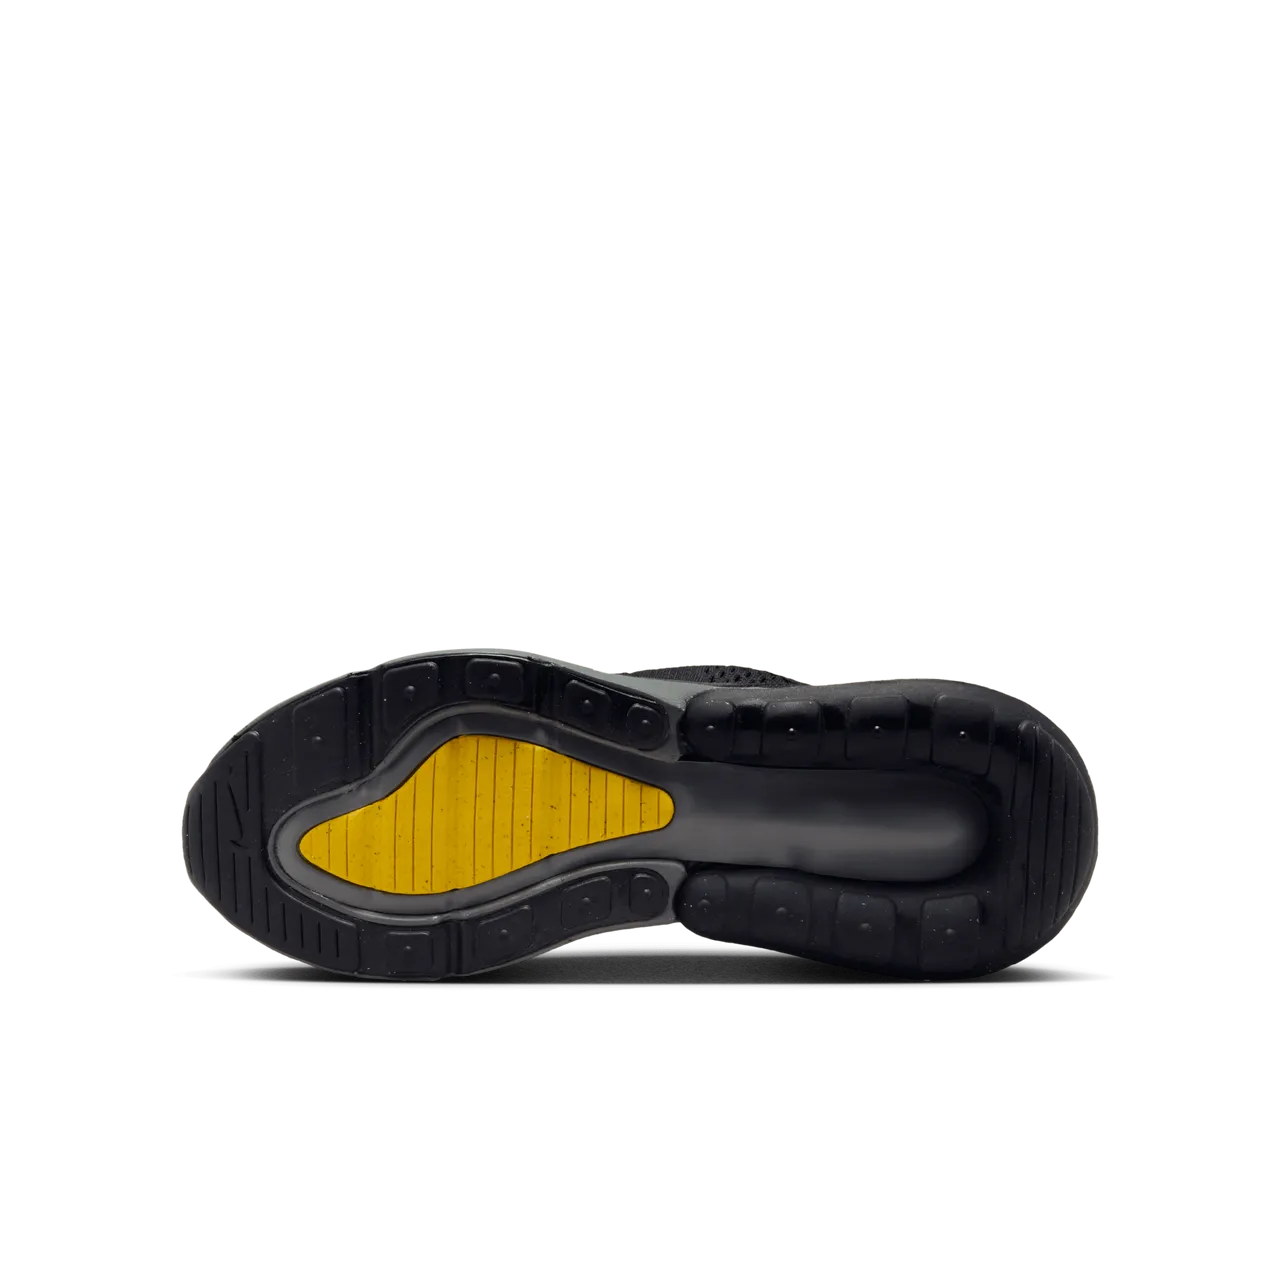 Nike Air Max 270 Kinderschoenen - Zwart